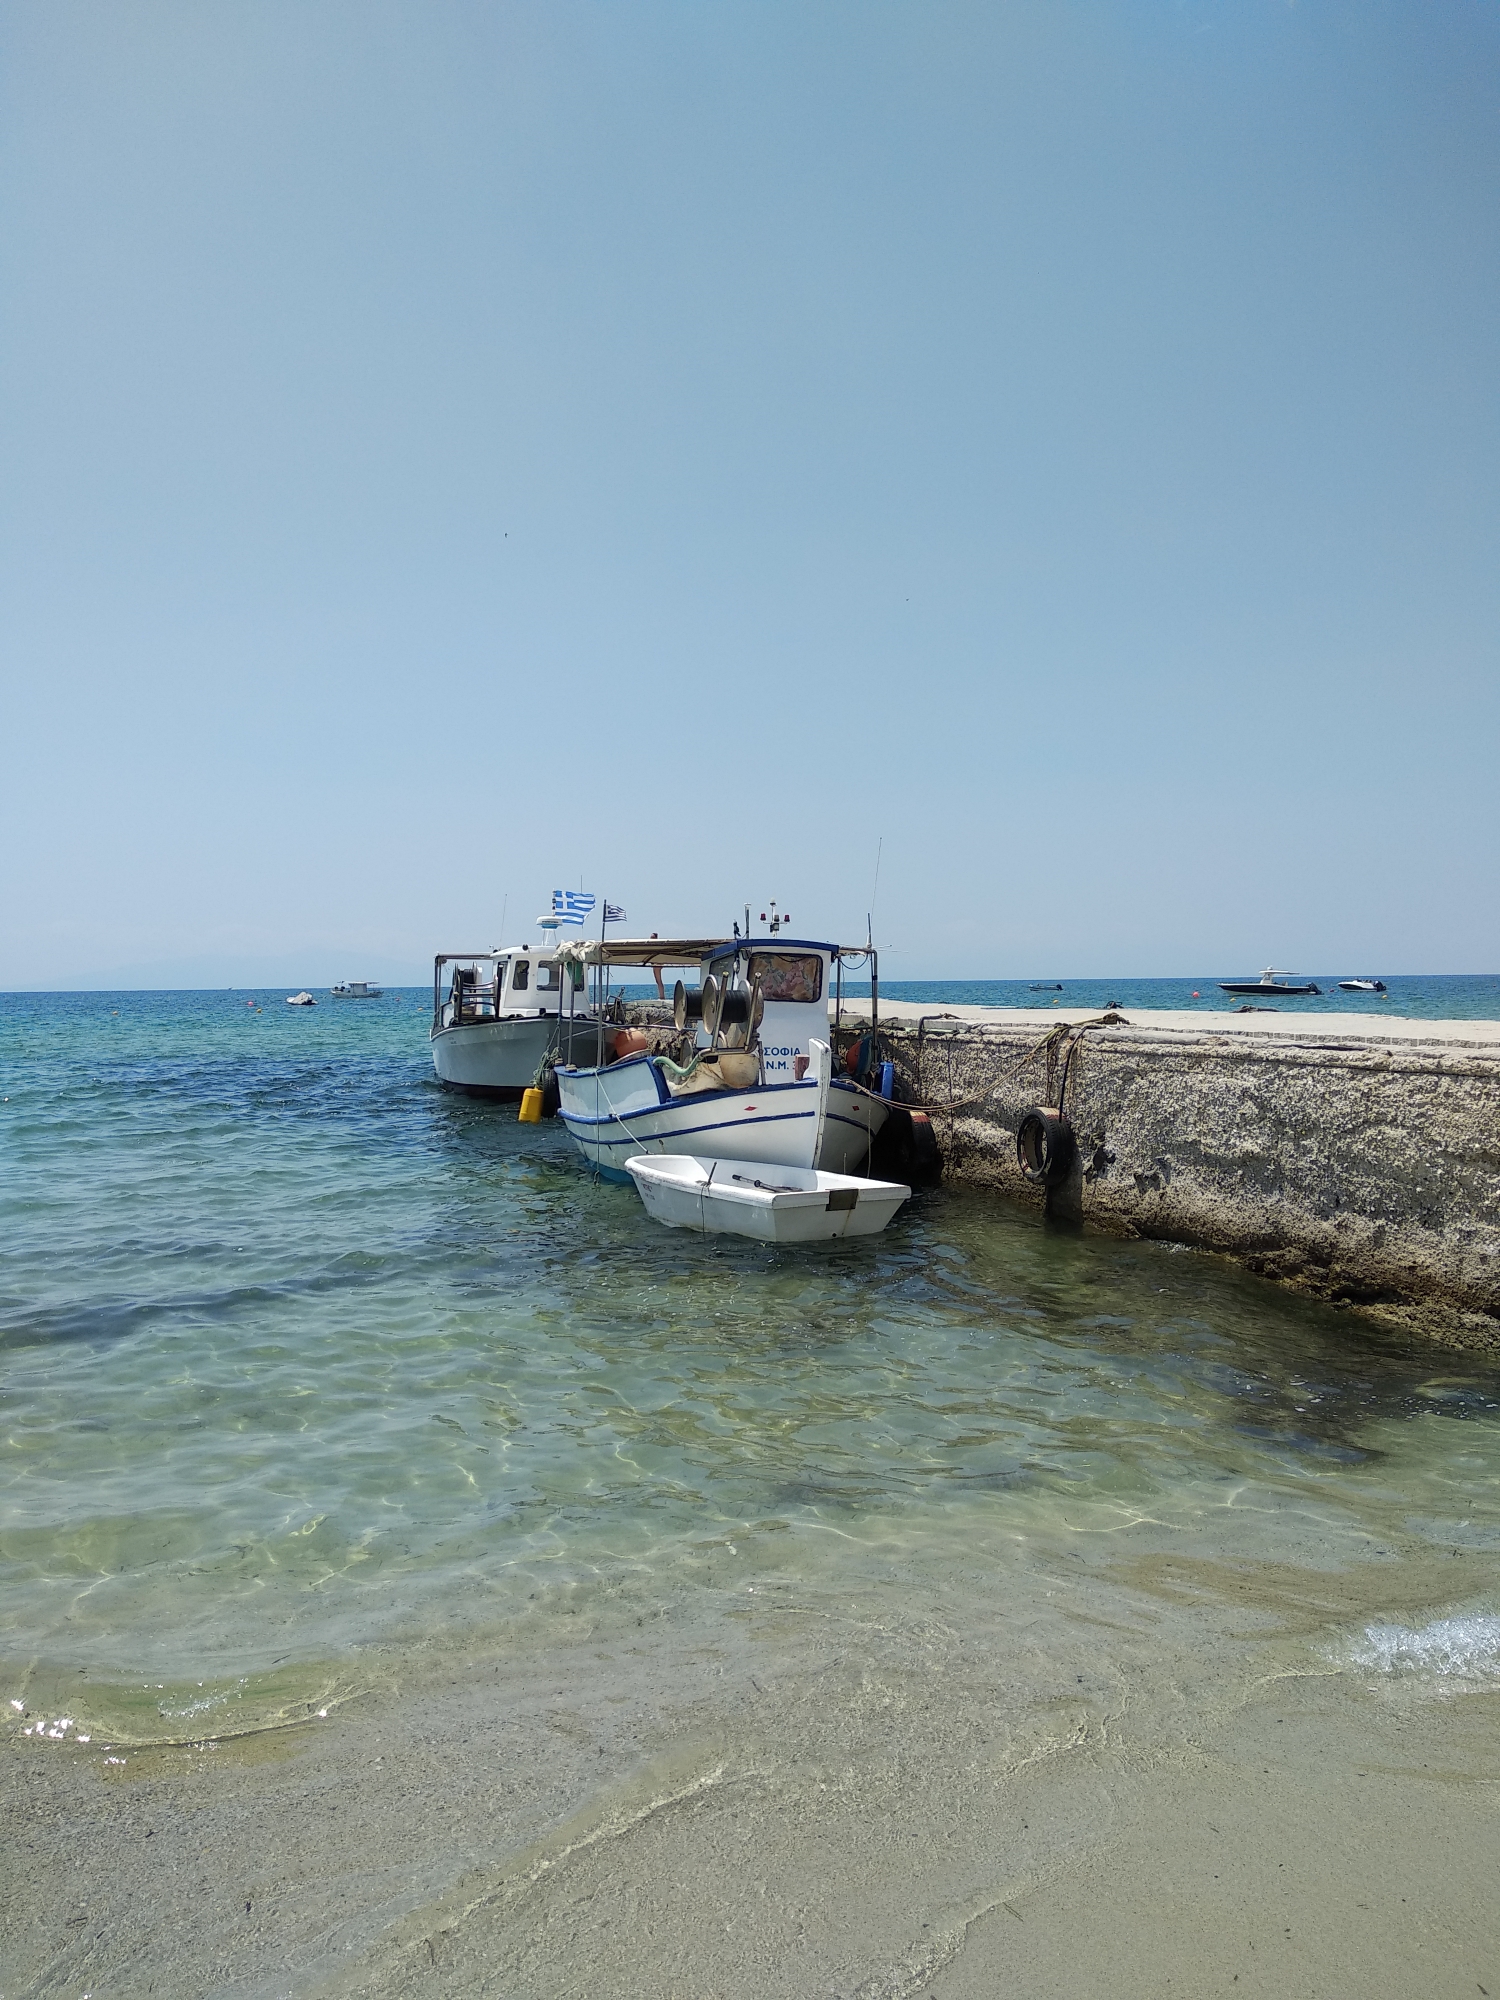 Півострів Халкідіки, Греція: що подивитись, документи, транспорт, ціни